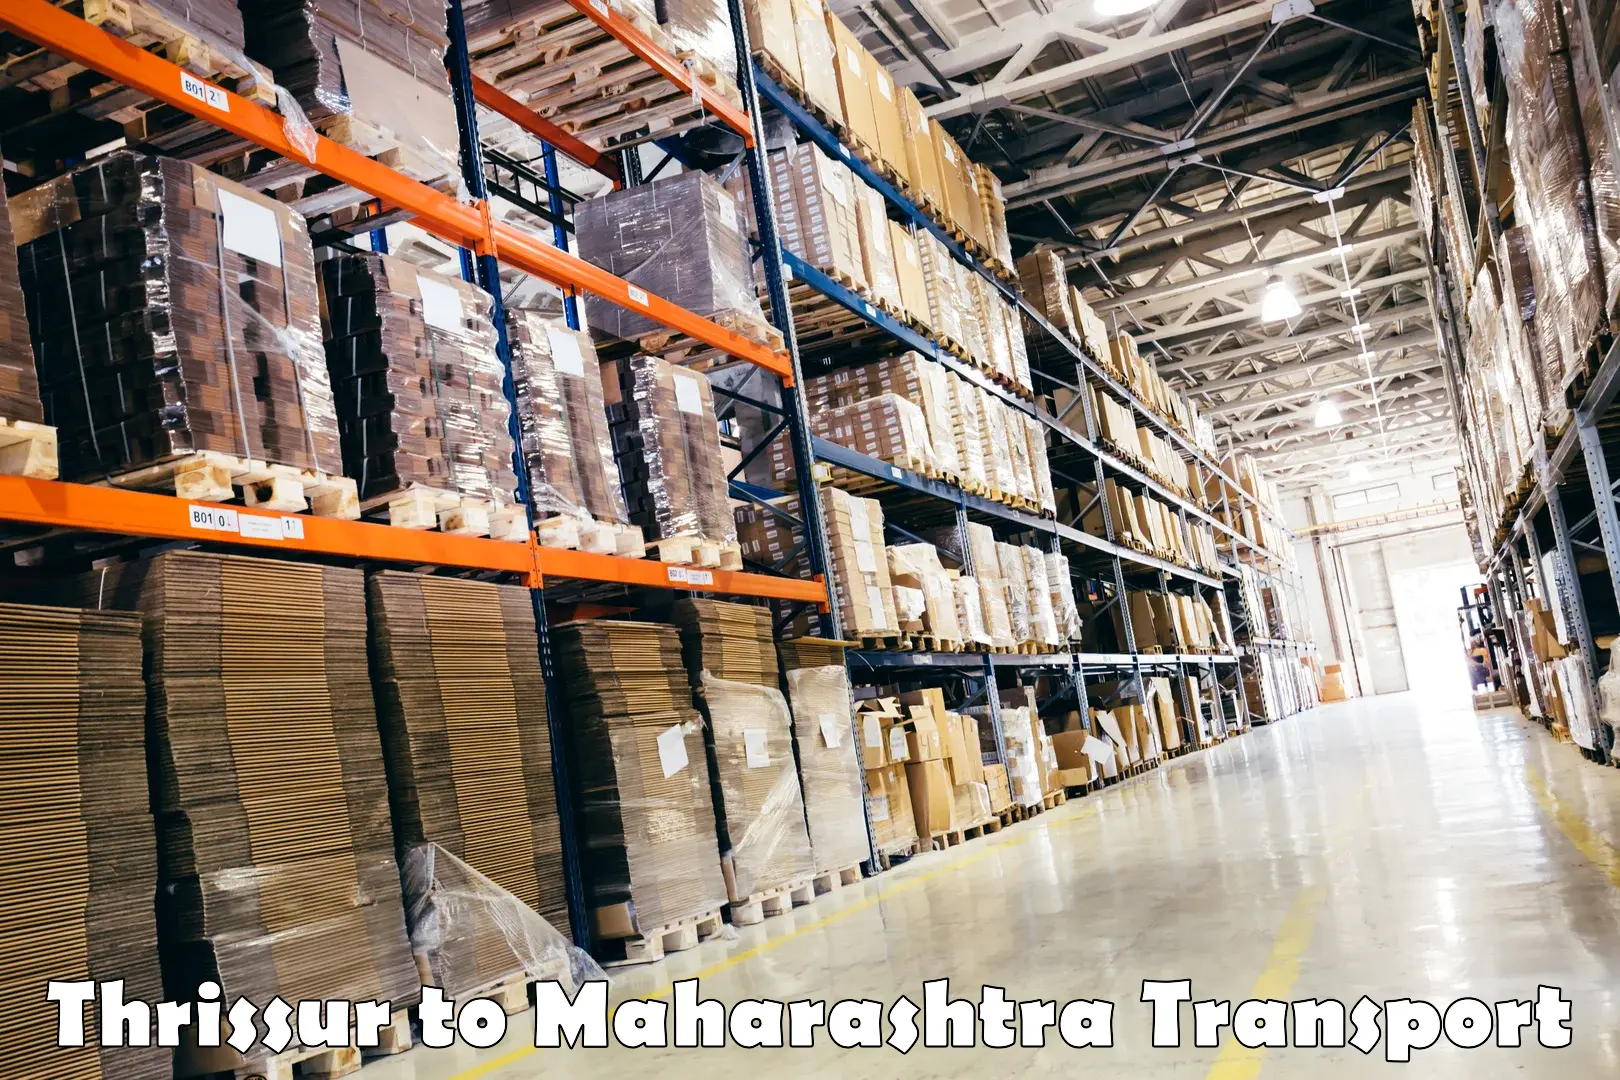 Cargo train transport services Thrissur to Bhandara